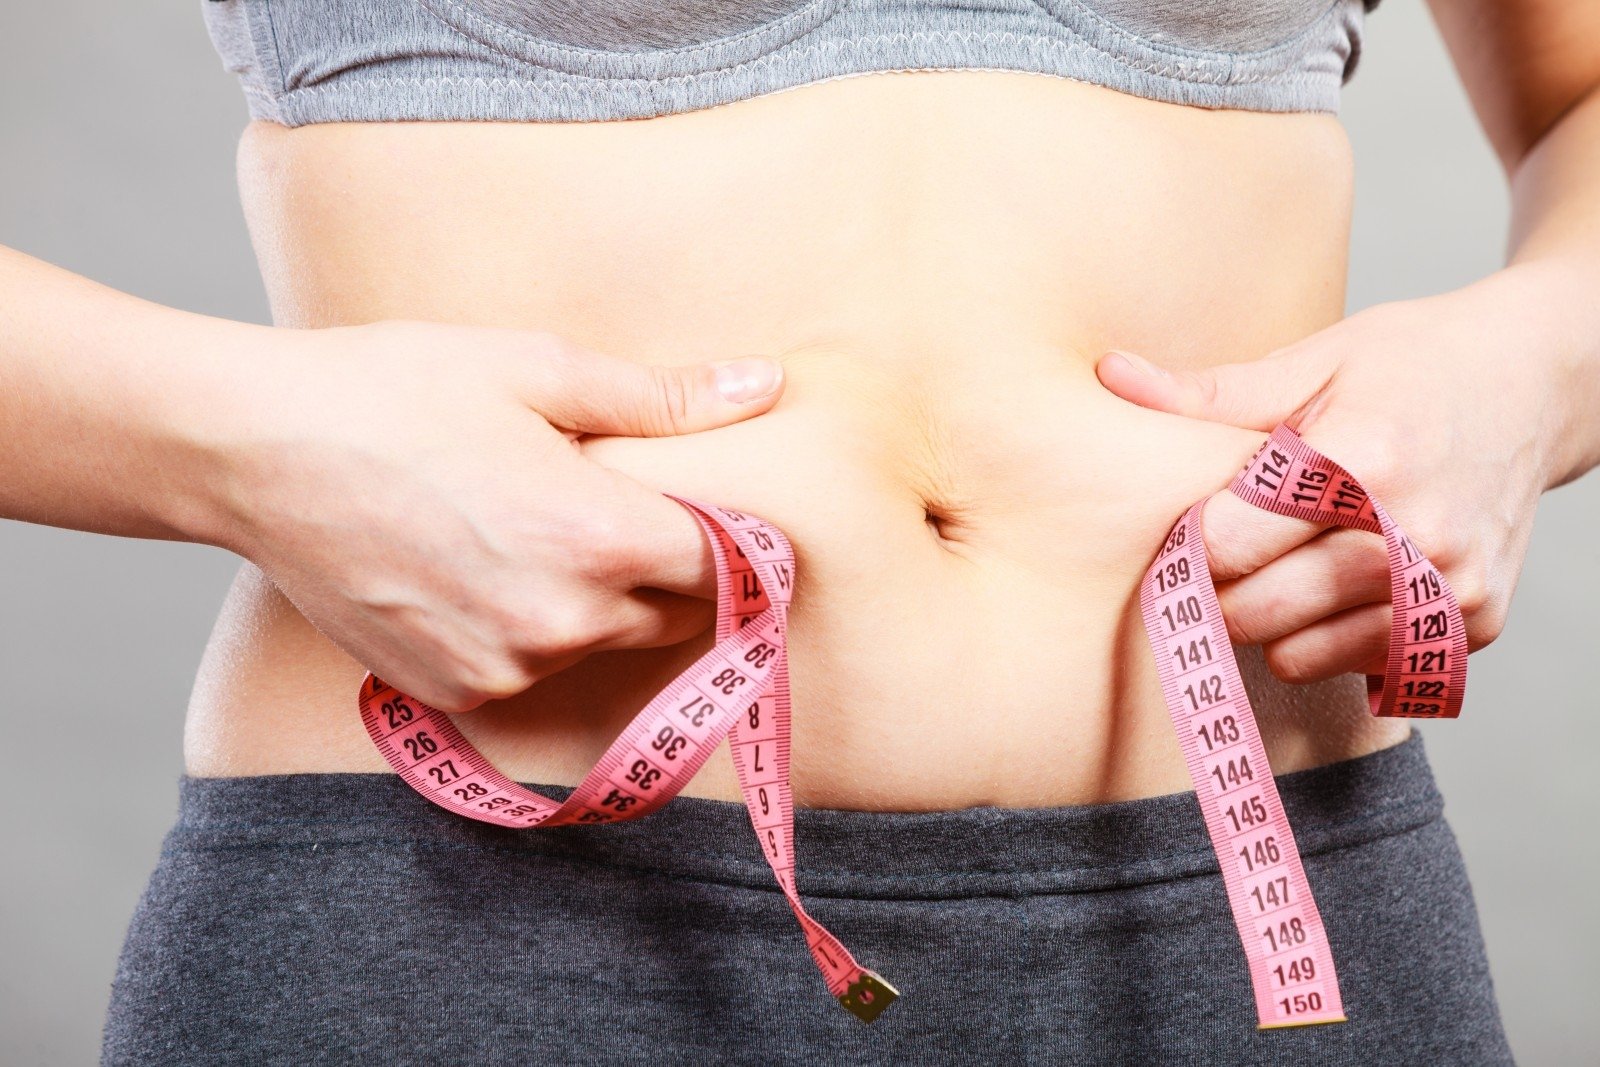 amerikiečių stabas mesti svorį ar galite numesti svorio be strijų